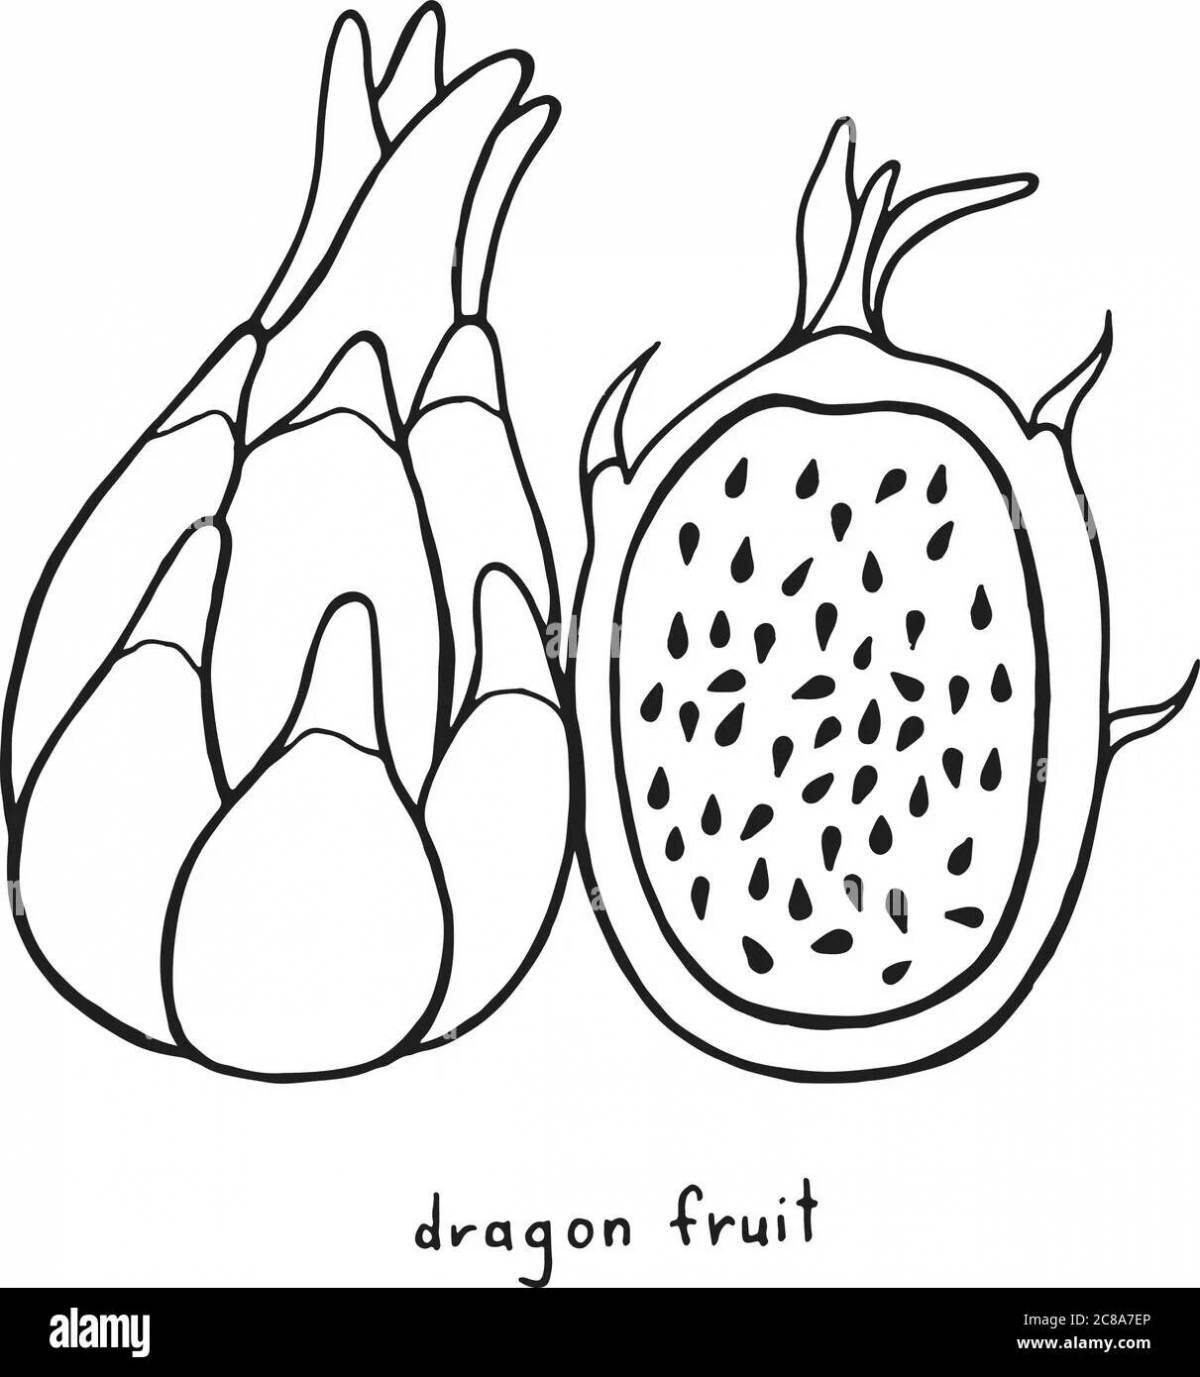 Замечательная страница раскраски драконьего фрукта